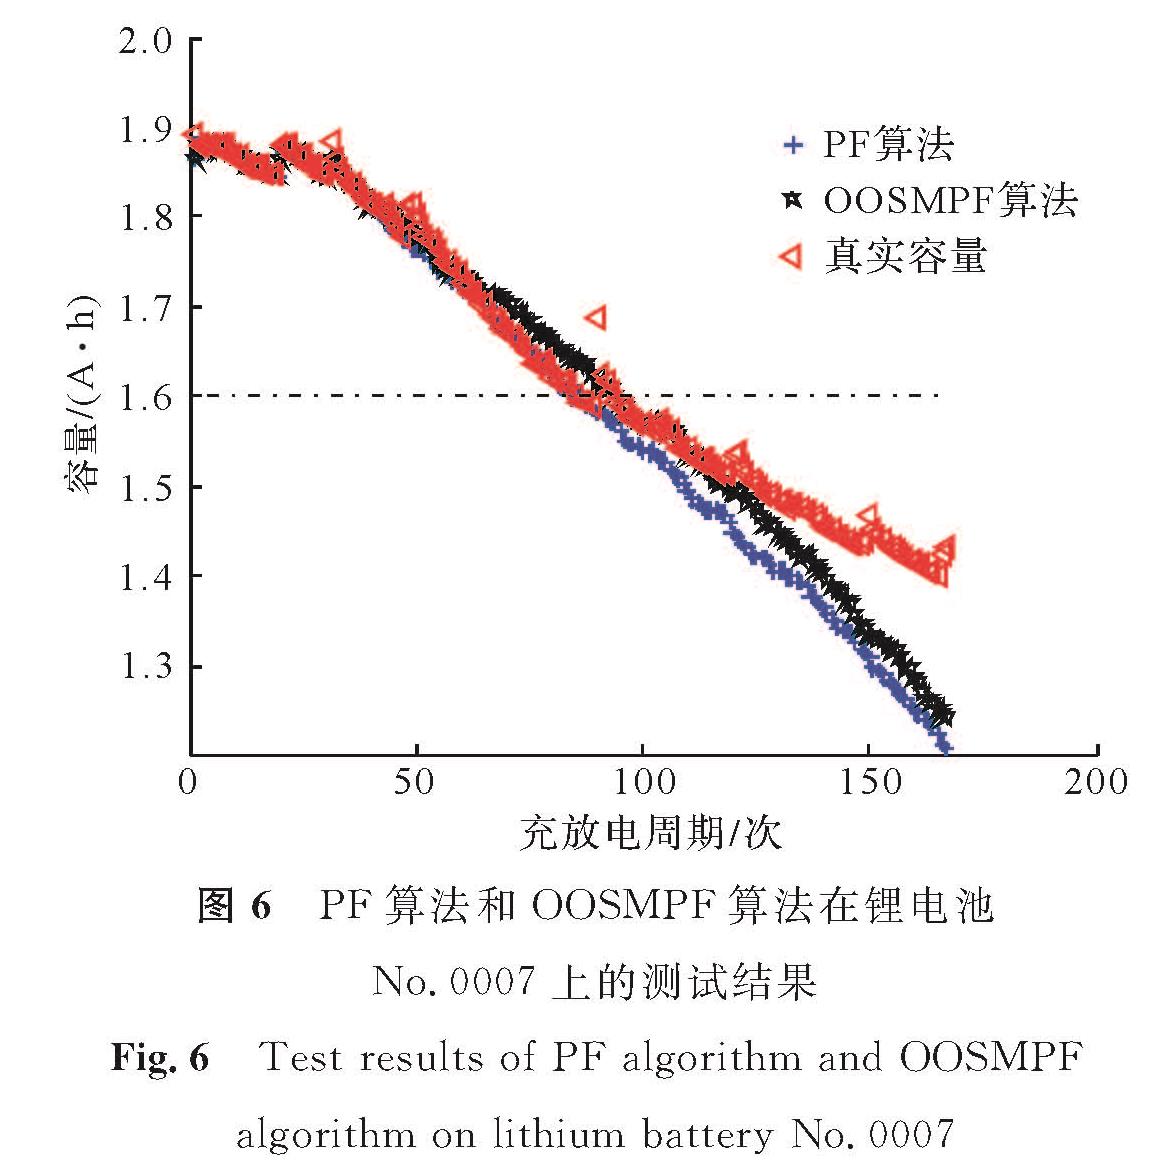 图6 PF算法和OOSMPF算法在锂电池No.0007上的测试结果<br/>Fig.6 Test results of PF algorithm and OOSMPF algorithm on lithium battery No.0007